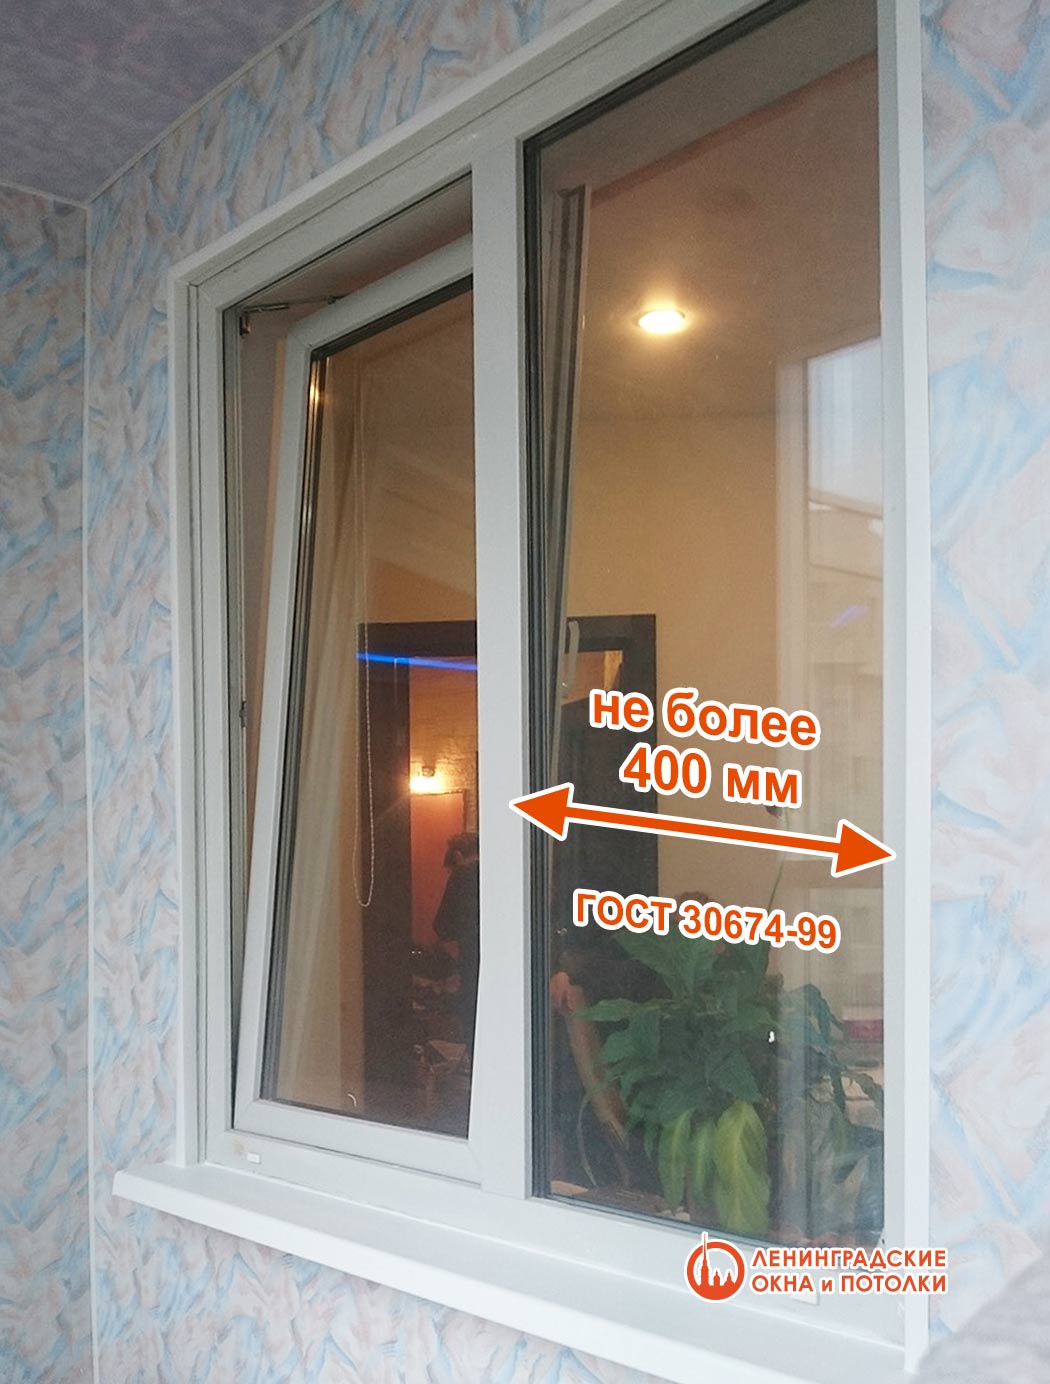 Максимальная допустимая ширина глухой части окна по ГОСТ 30674-99